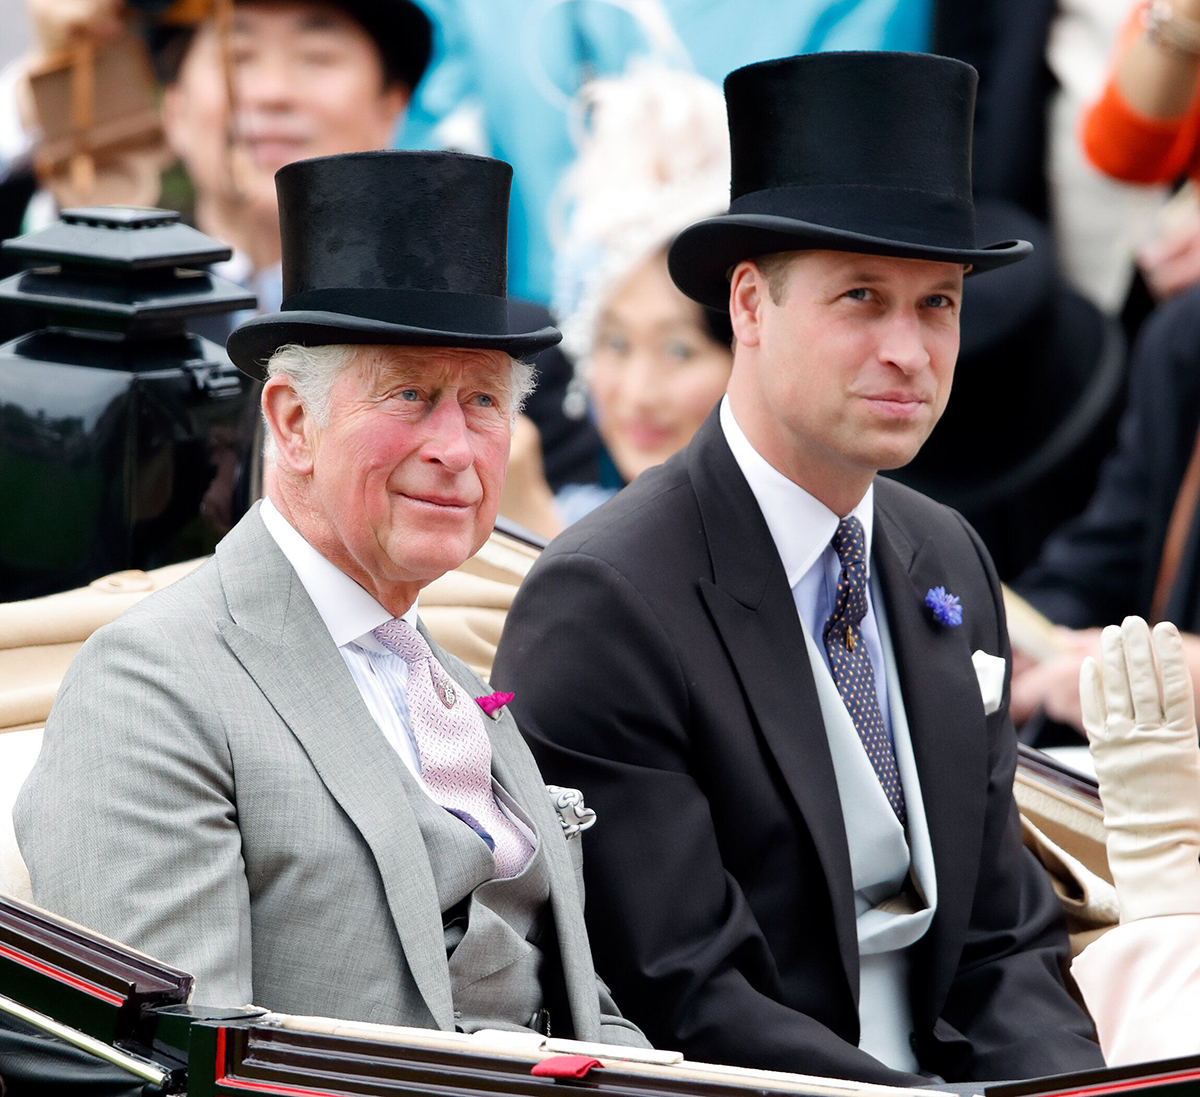 Чарльз и Уильям считают, что скандал вокруг принца Эндрю лично заденет Елизавету II